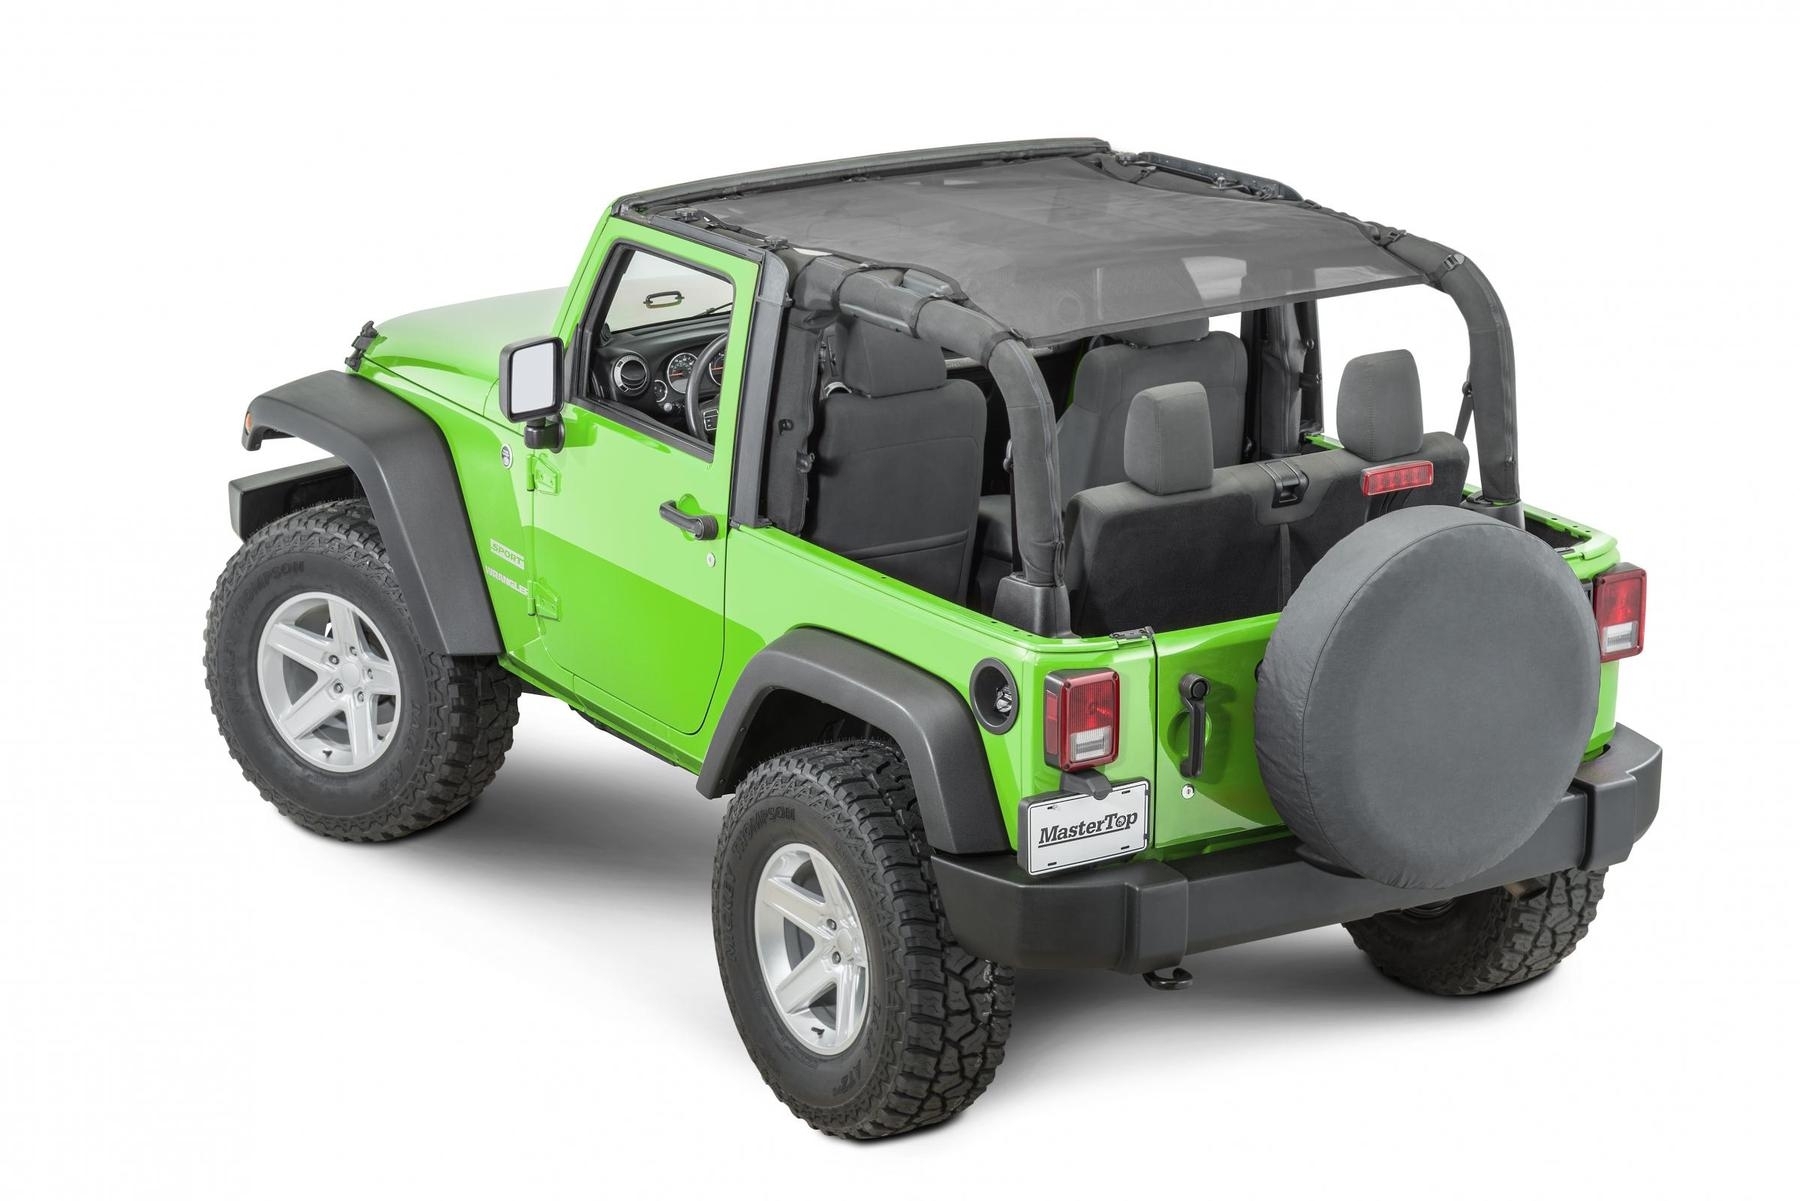 Mastertop Mesh Bimini Top Shademaker Plus For 07-18 Jeep Wrangler Jk 2 Door, Black | 07-18 Jeep